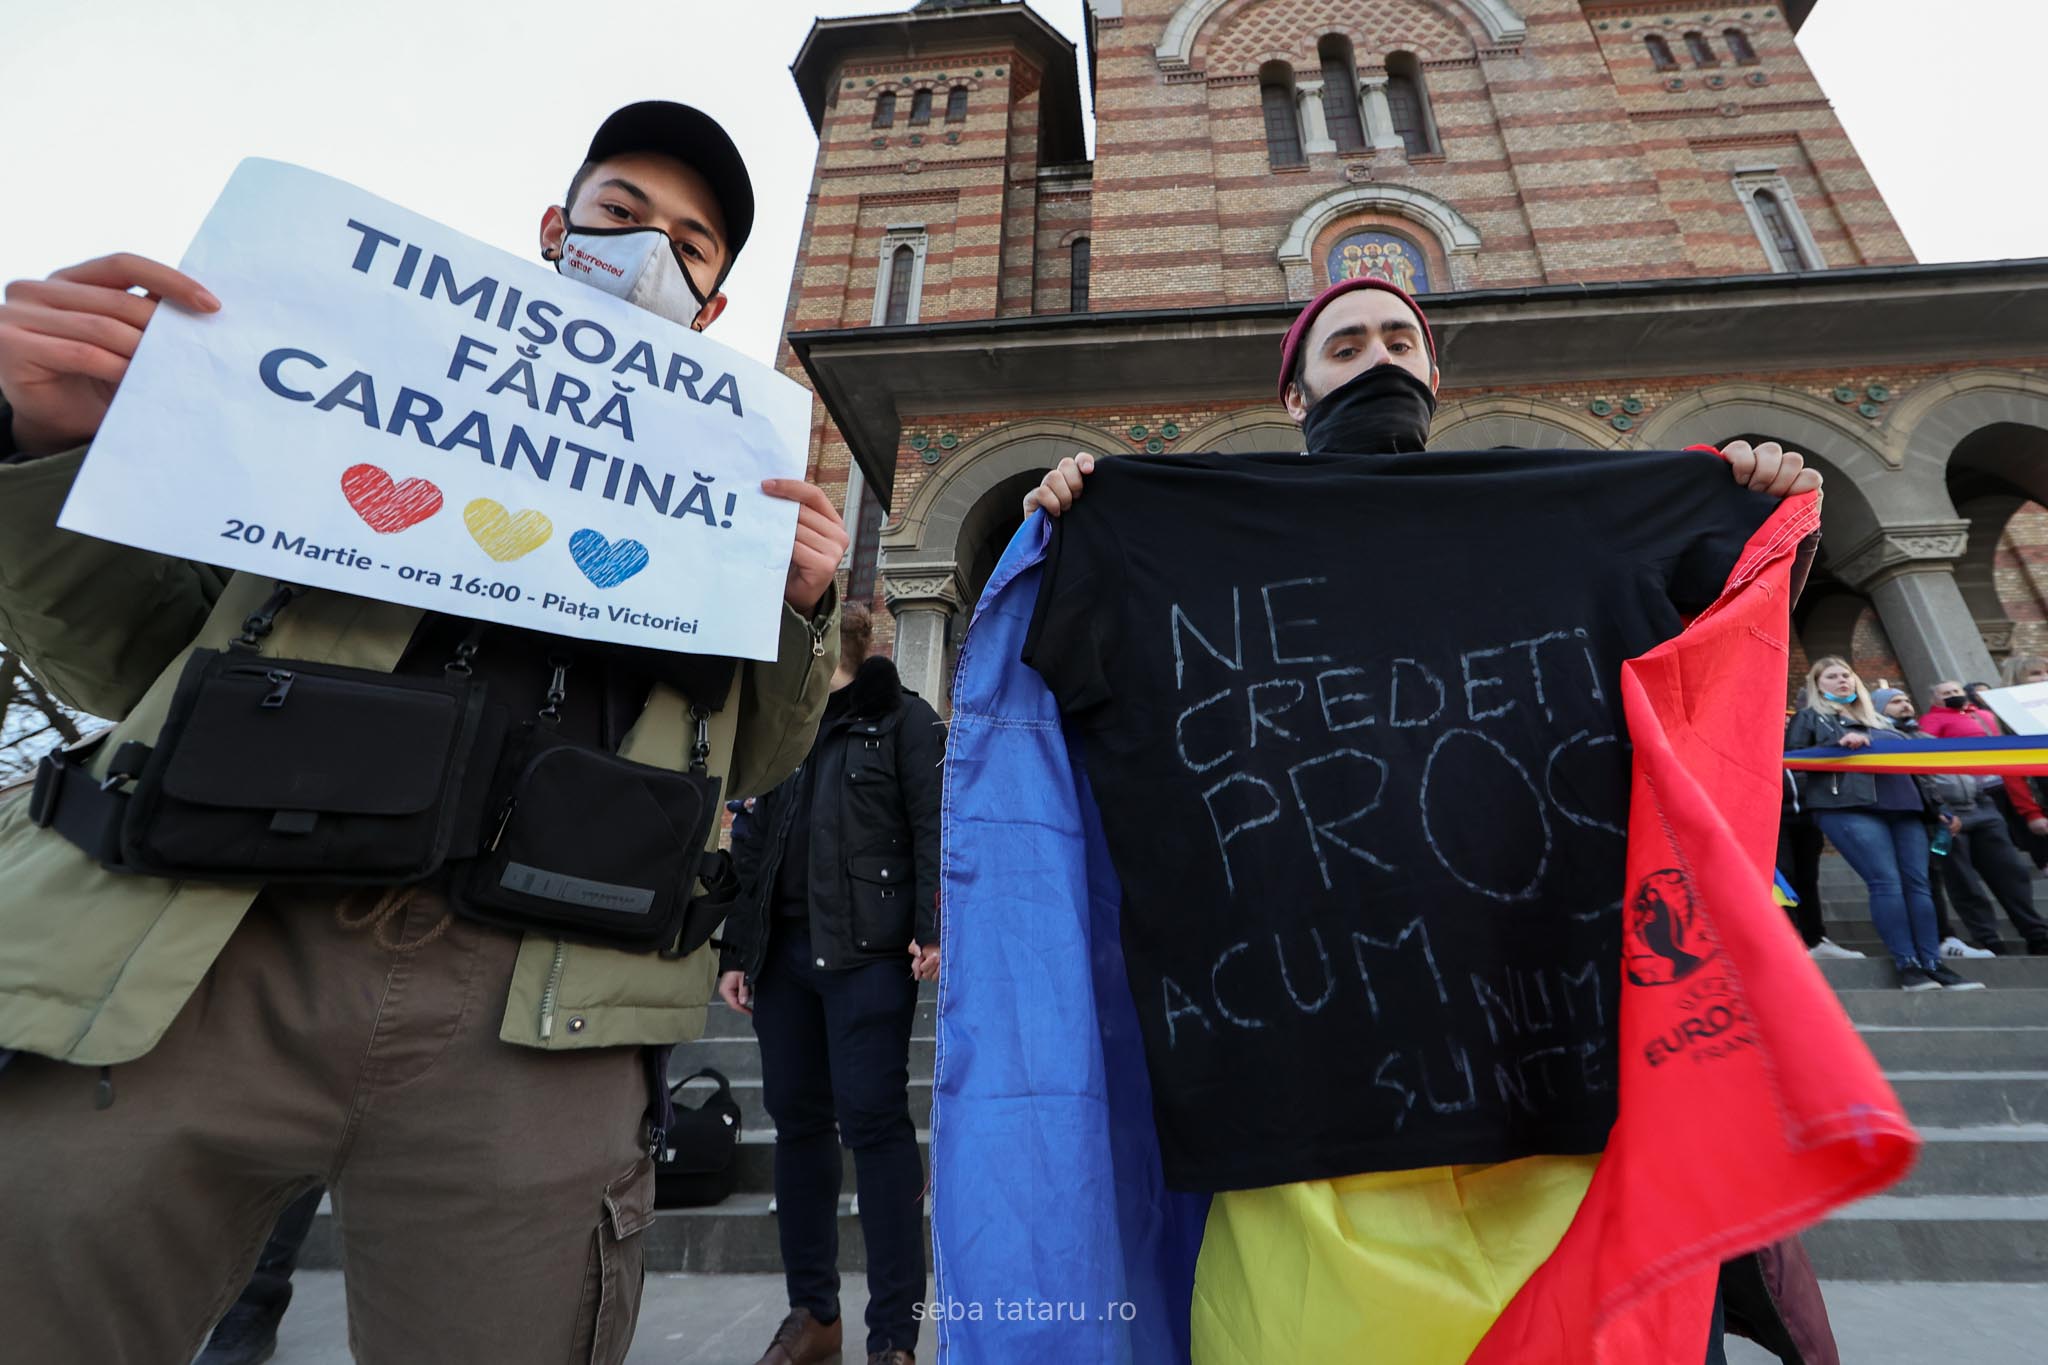 Protest Timișoara anti carantină. Sursă foto - Seba Tătaru (12)